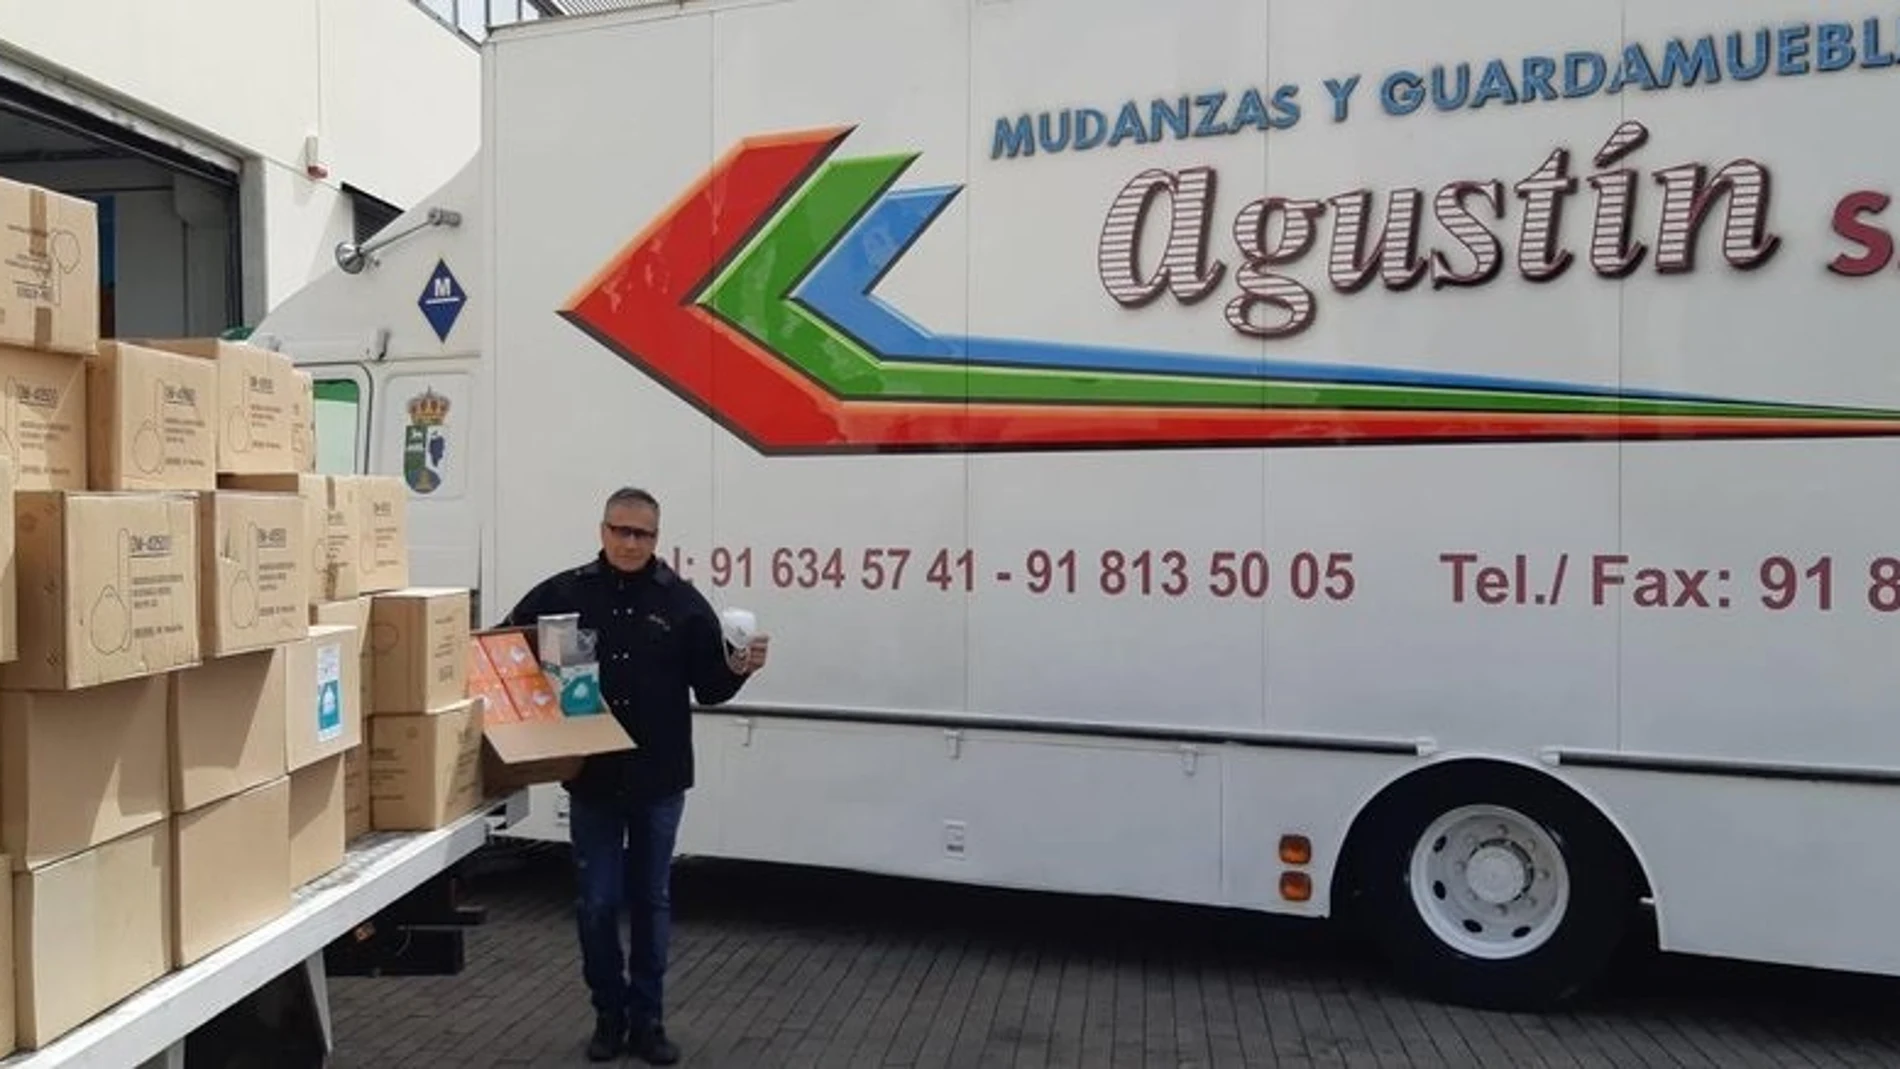 El dueño de la empresa Mundanzas Agustín dona al Hospital Puerta de Hierro de Majadahonda miles de mascarillas de un cliente fallecido.